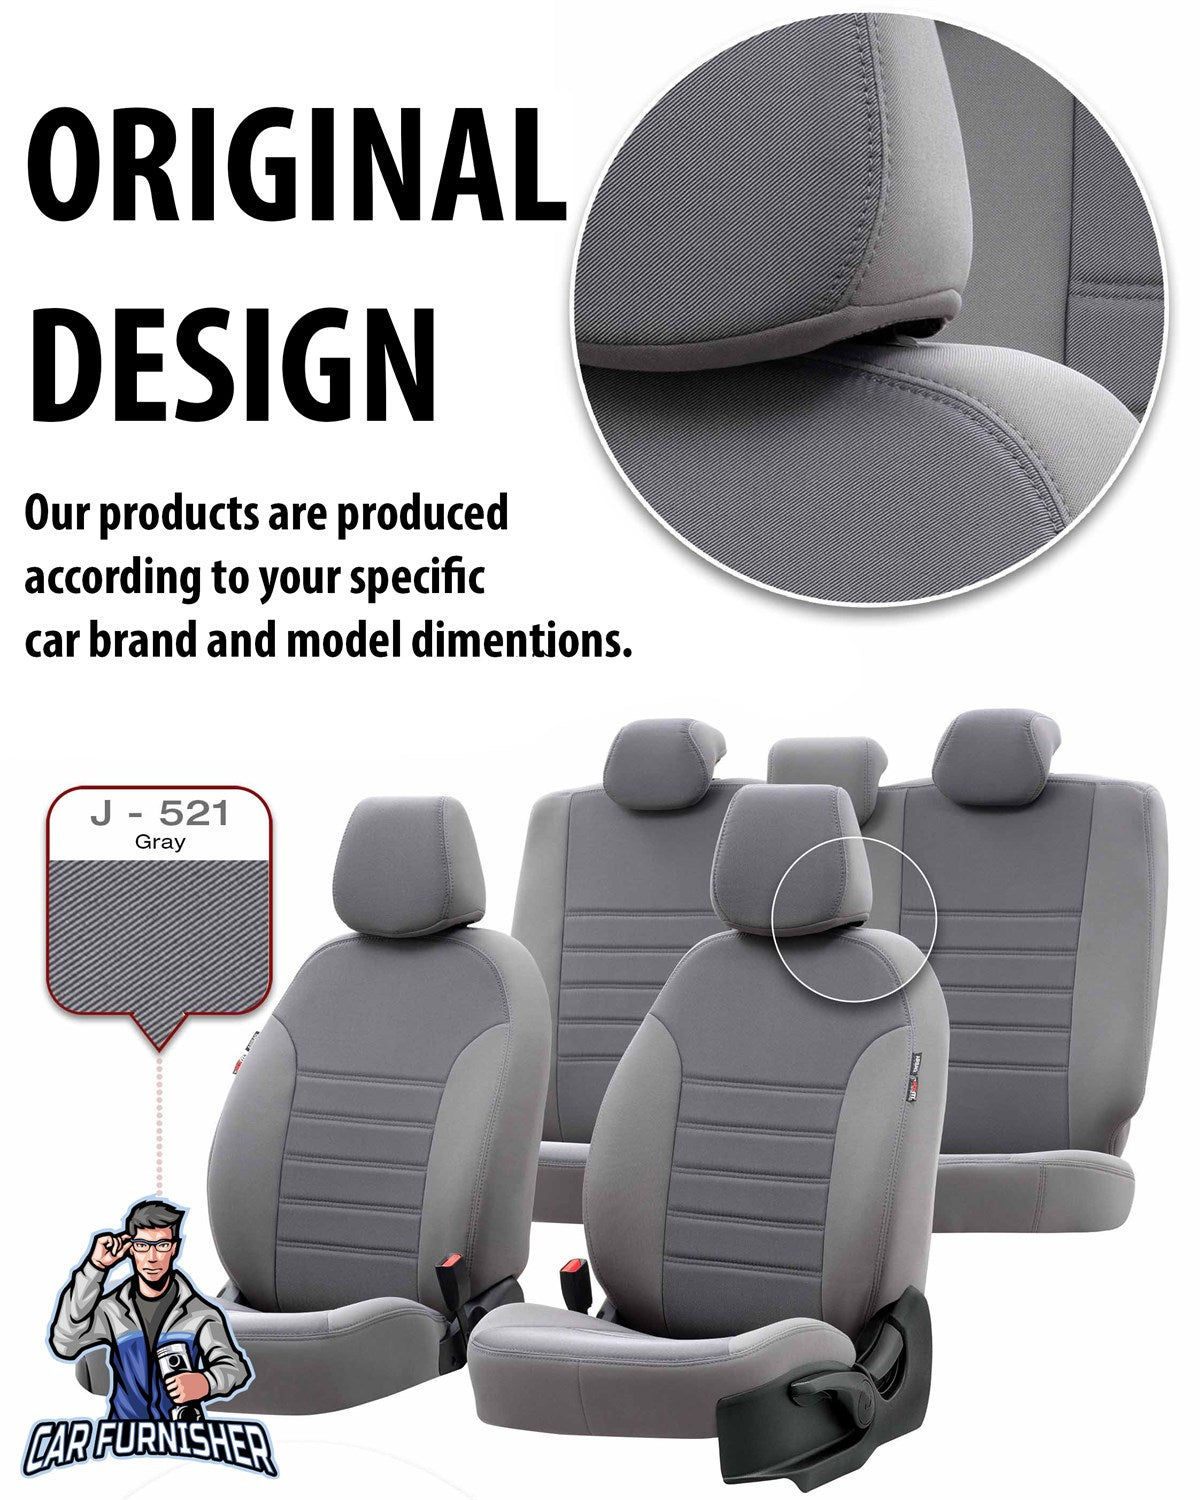 Skoda Citigo Seat Covers Original Jacquard Design Black Jacquard Fabric